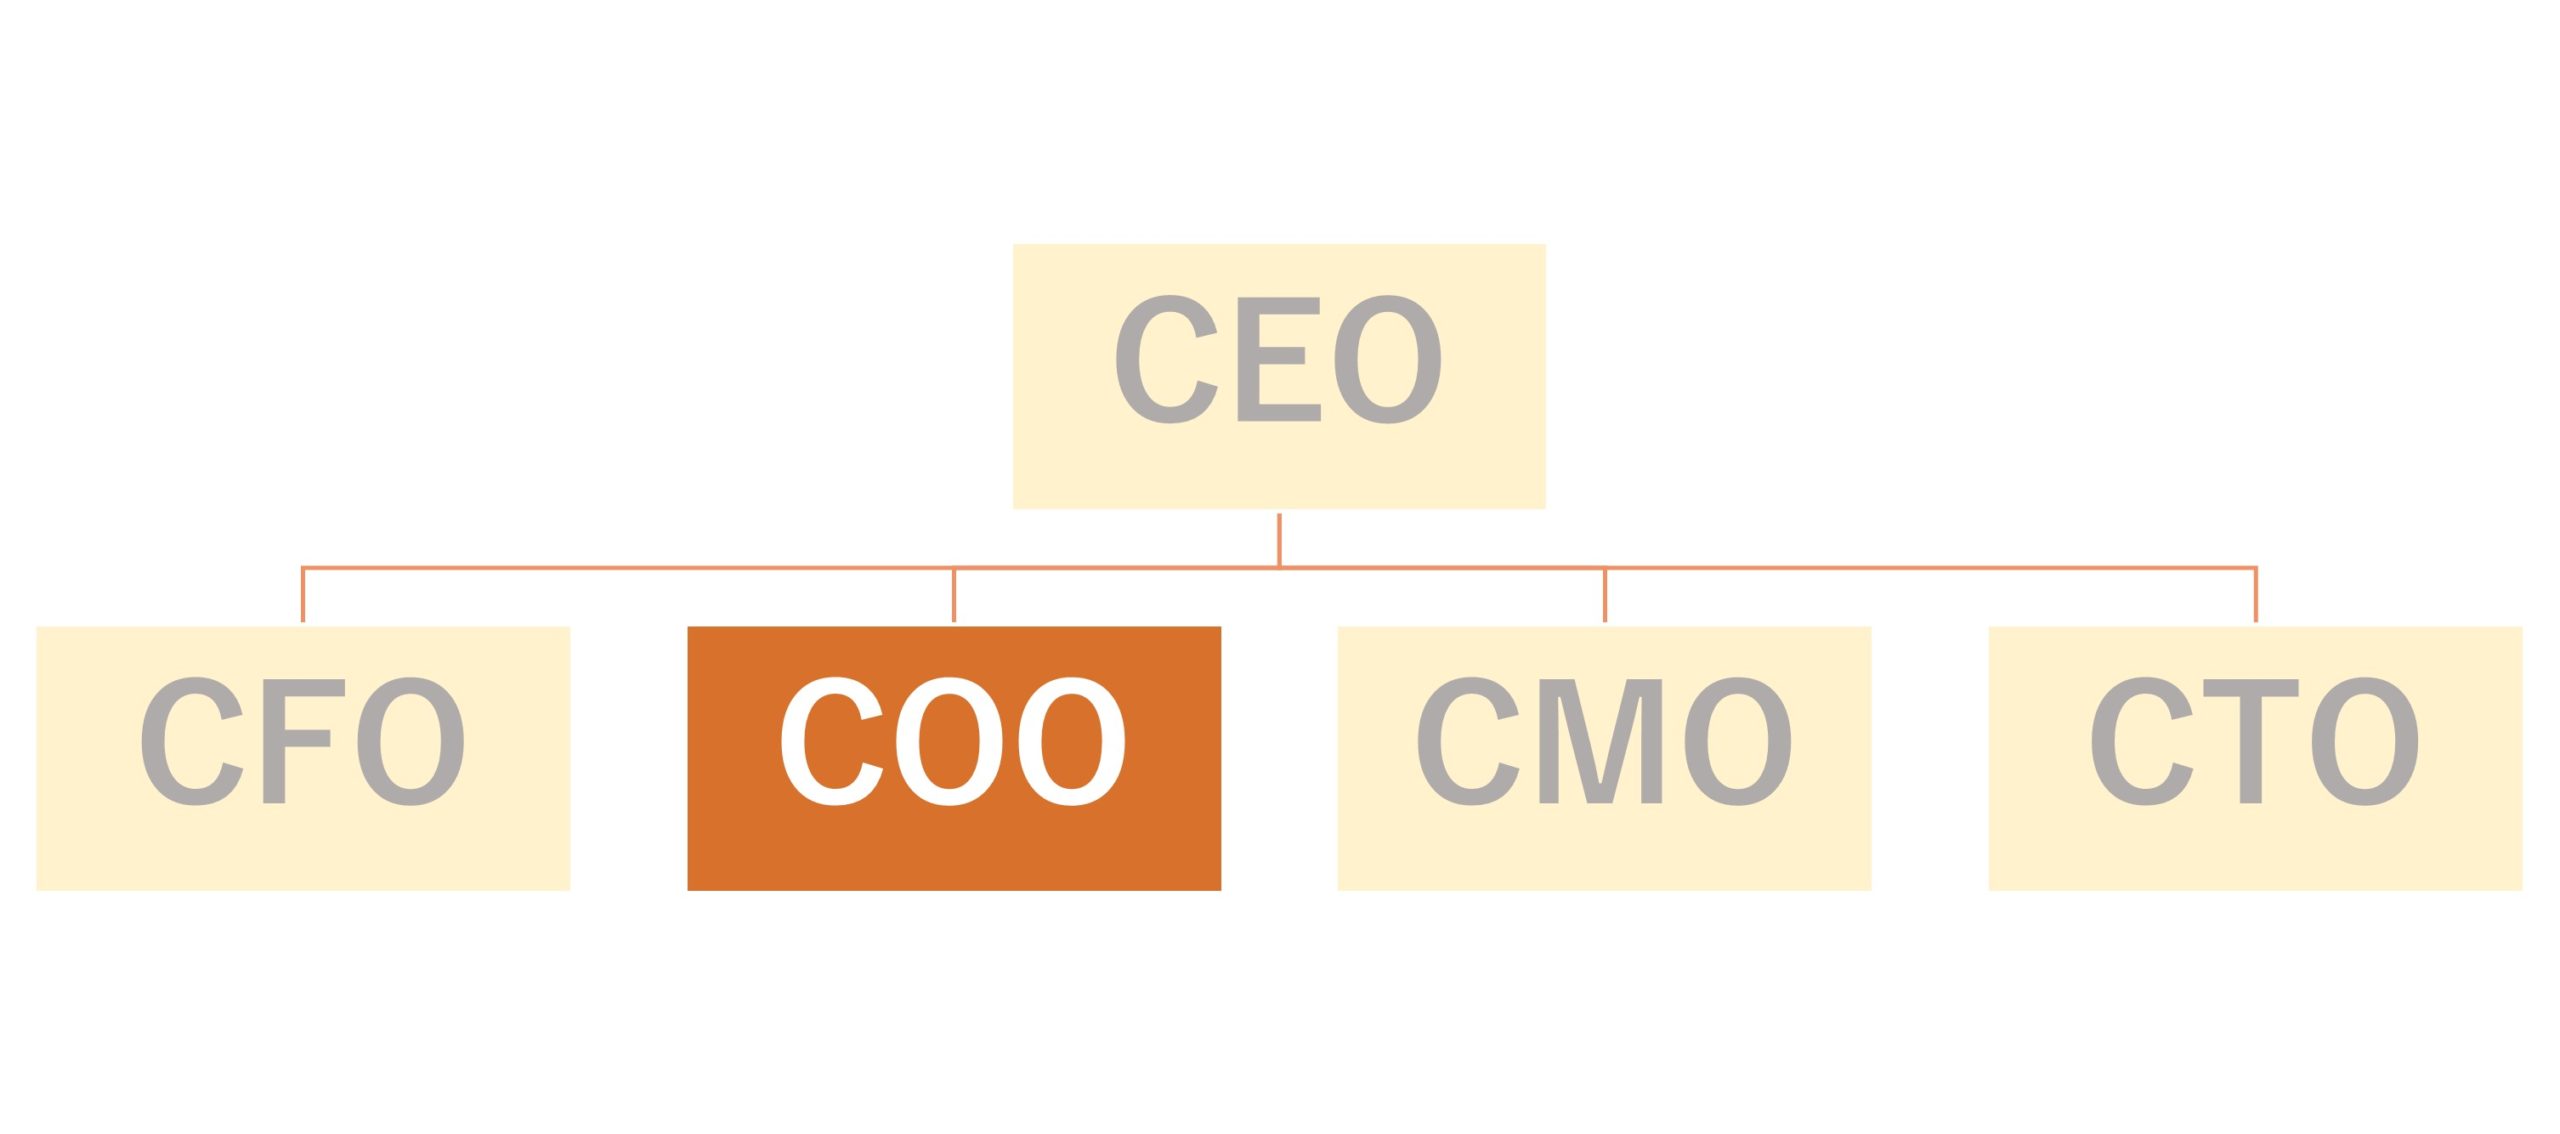 cooが存在する組織の例。COOの下にCFO、CTO、CMOらが付く場合もあり、会社によって異なる。